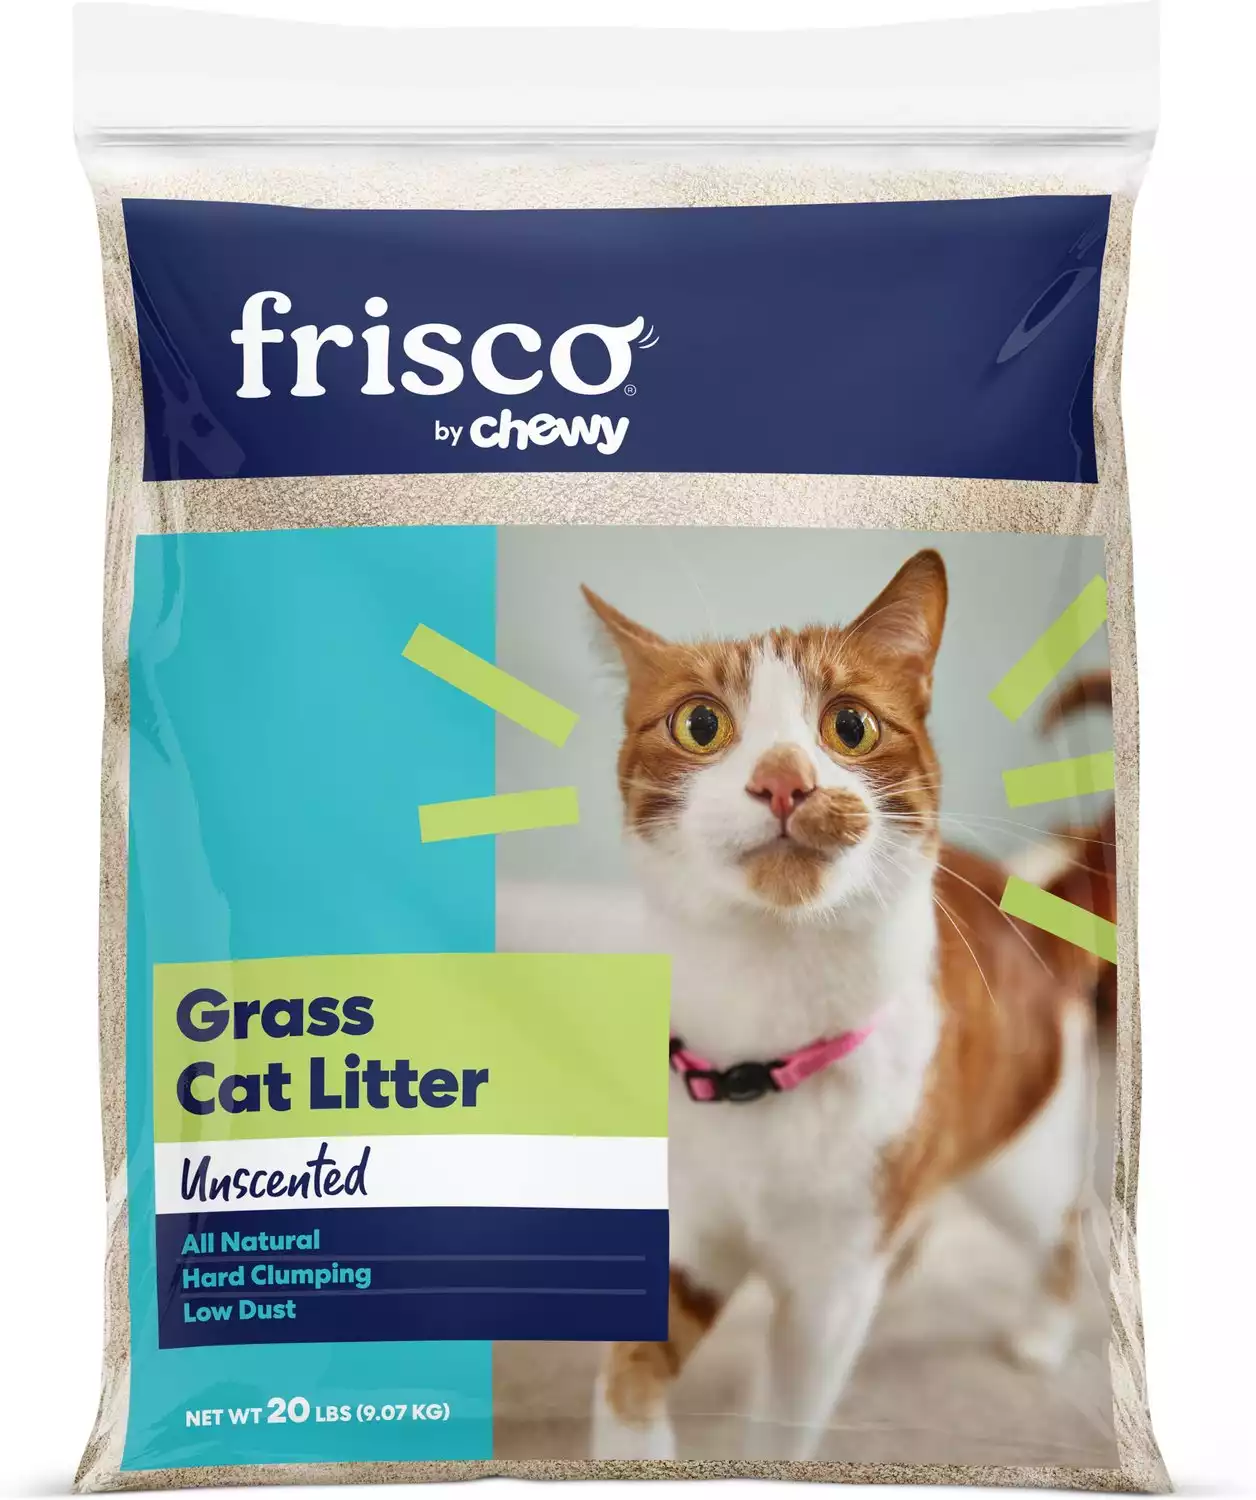 Grass Cat Litter